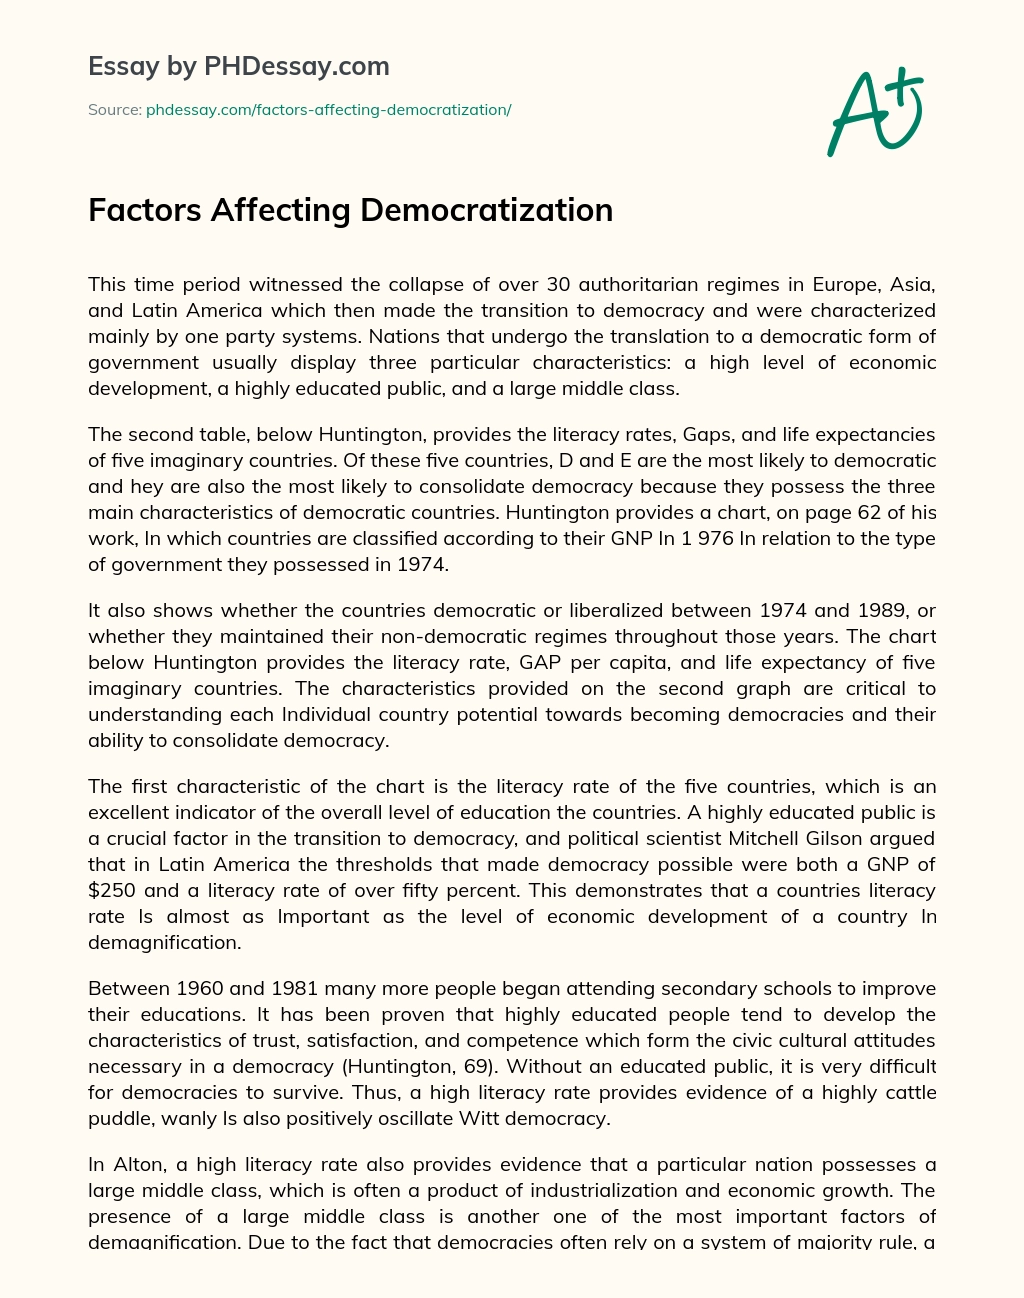 Factors Affecting Democratization essay